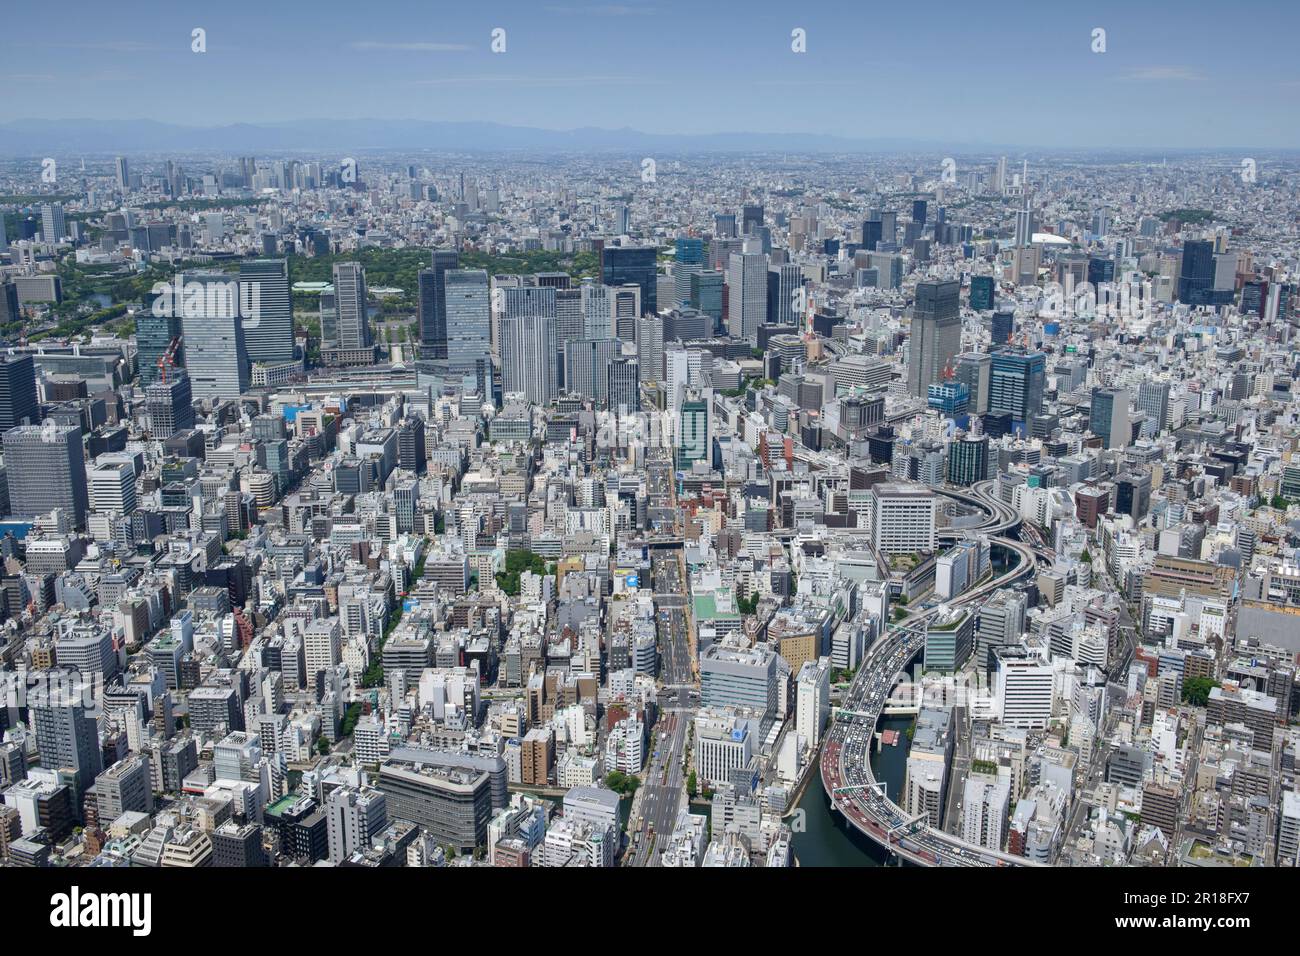 Vue aérienne de la gare de Kayabacho depuis le côté sud-est vers Otemachi, direction Palais impérial de Tokyo Banque D'Images